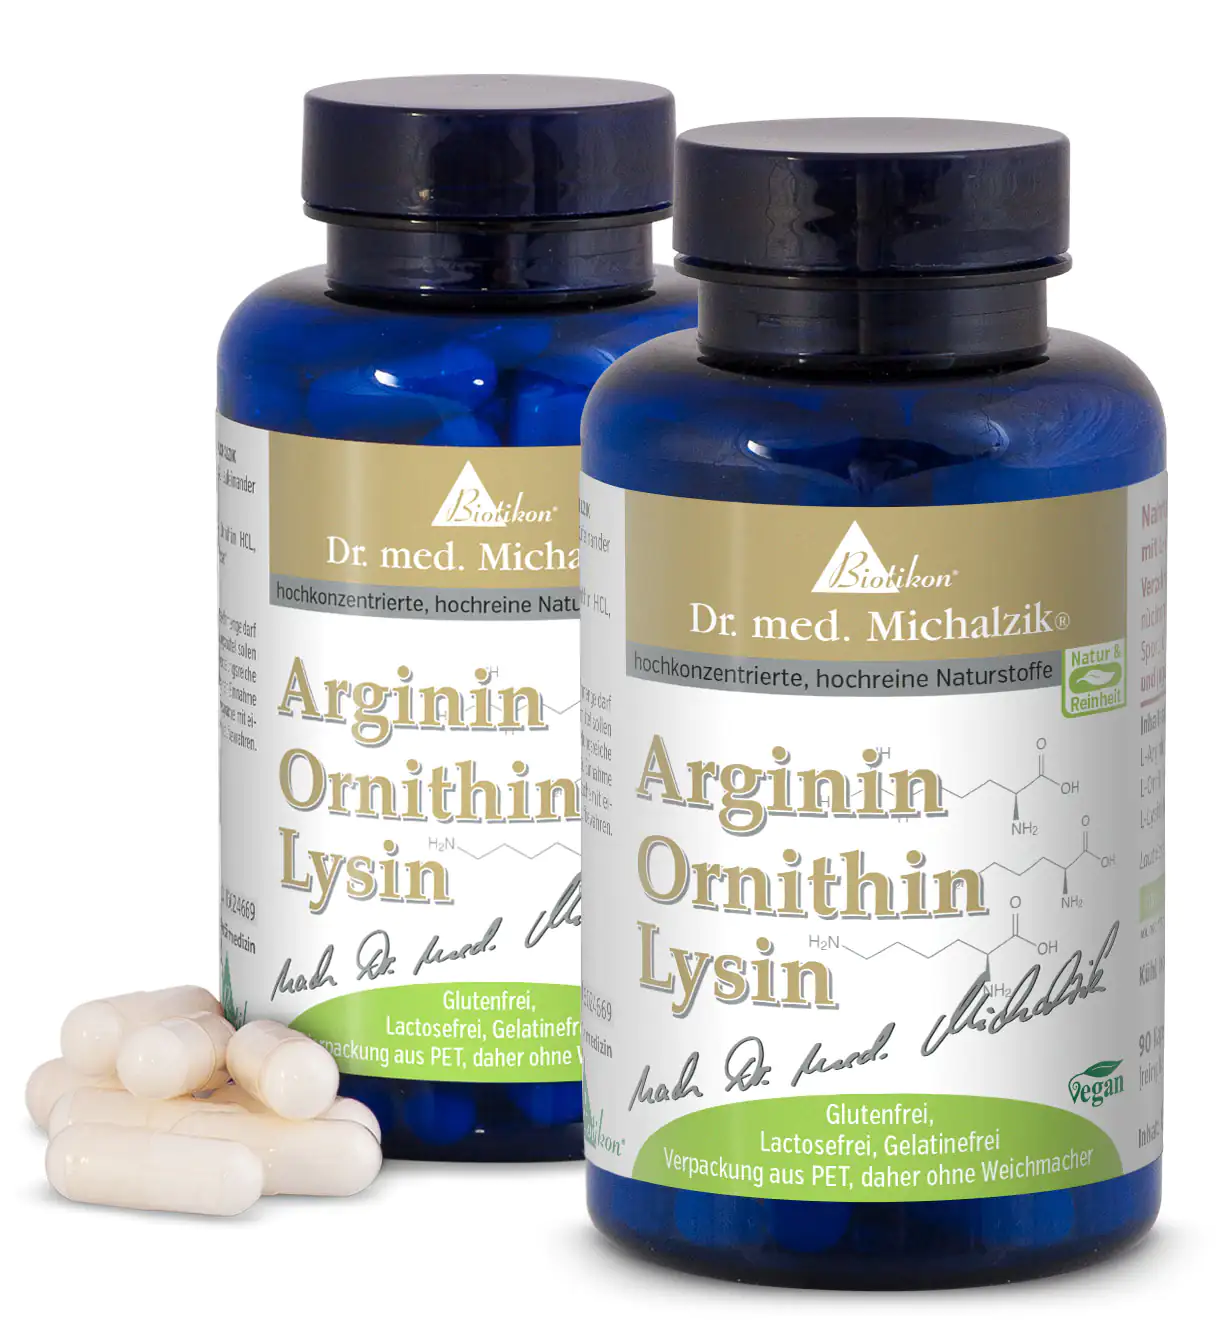 Arginine Ornithine Lysine by Dr. med. Michalzik